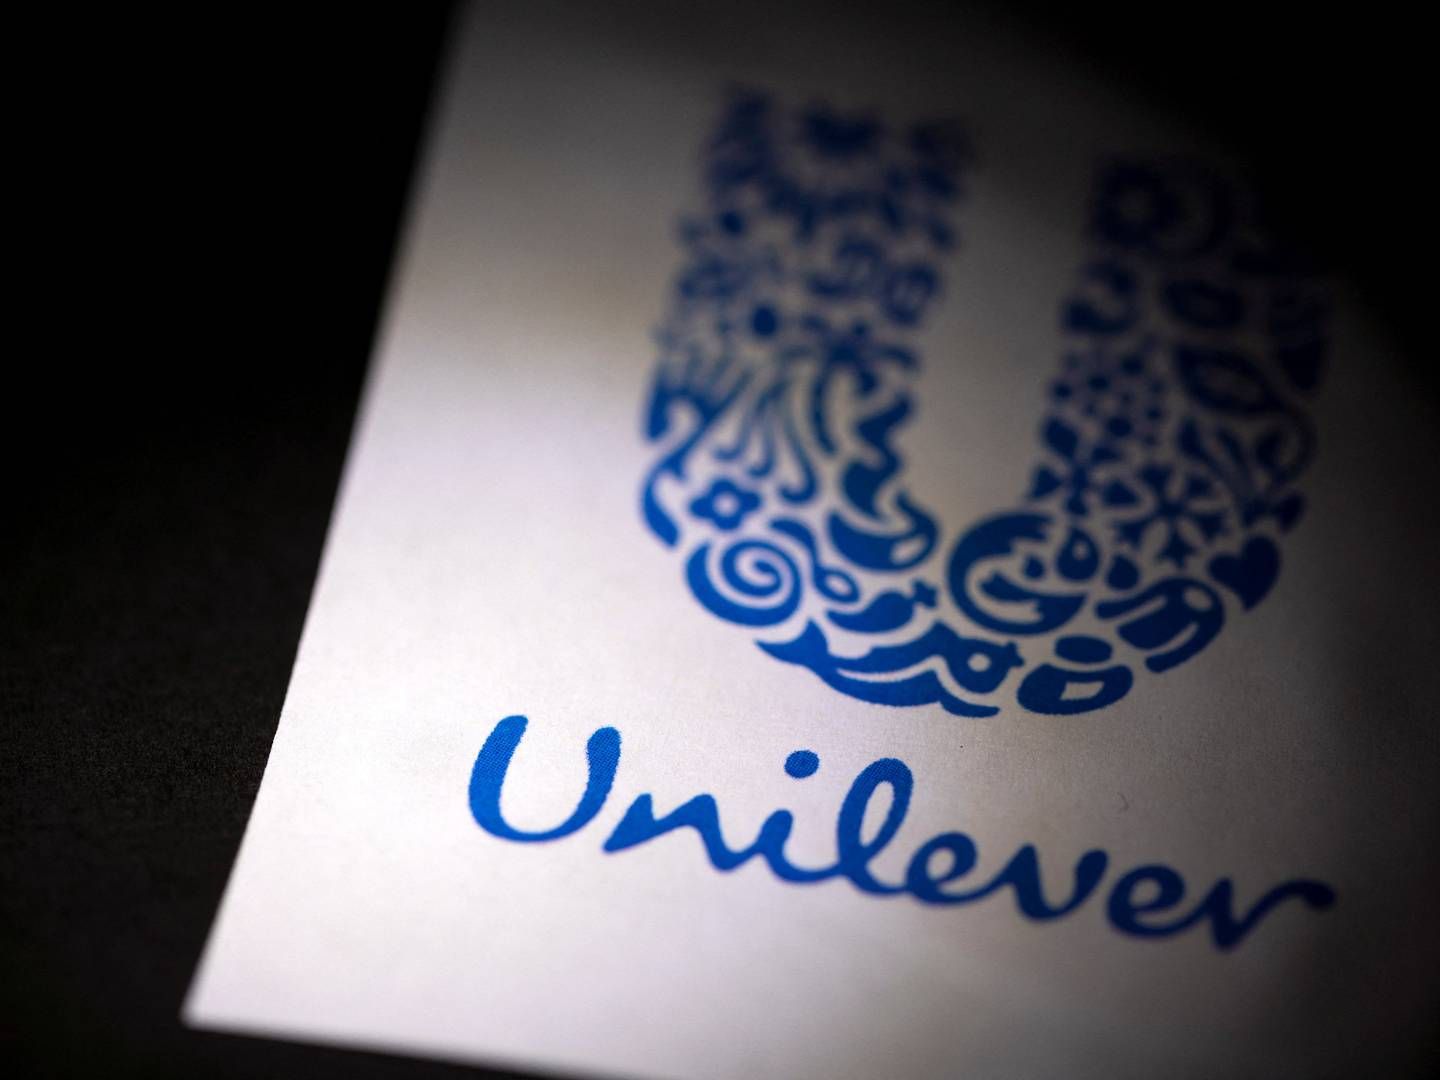 Unilever er kommet i de britiske konkurrencemyndigheders søgelys for kommerciel kommunikation. | Foto: Dado Ruvic